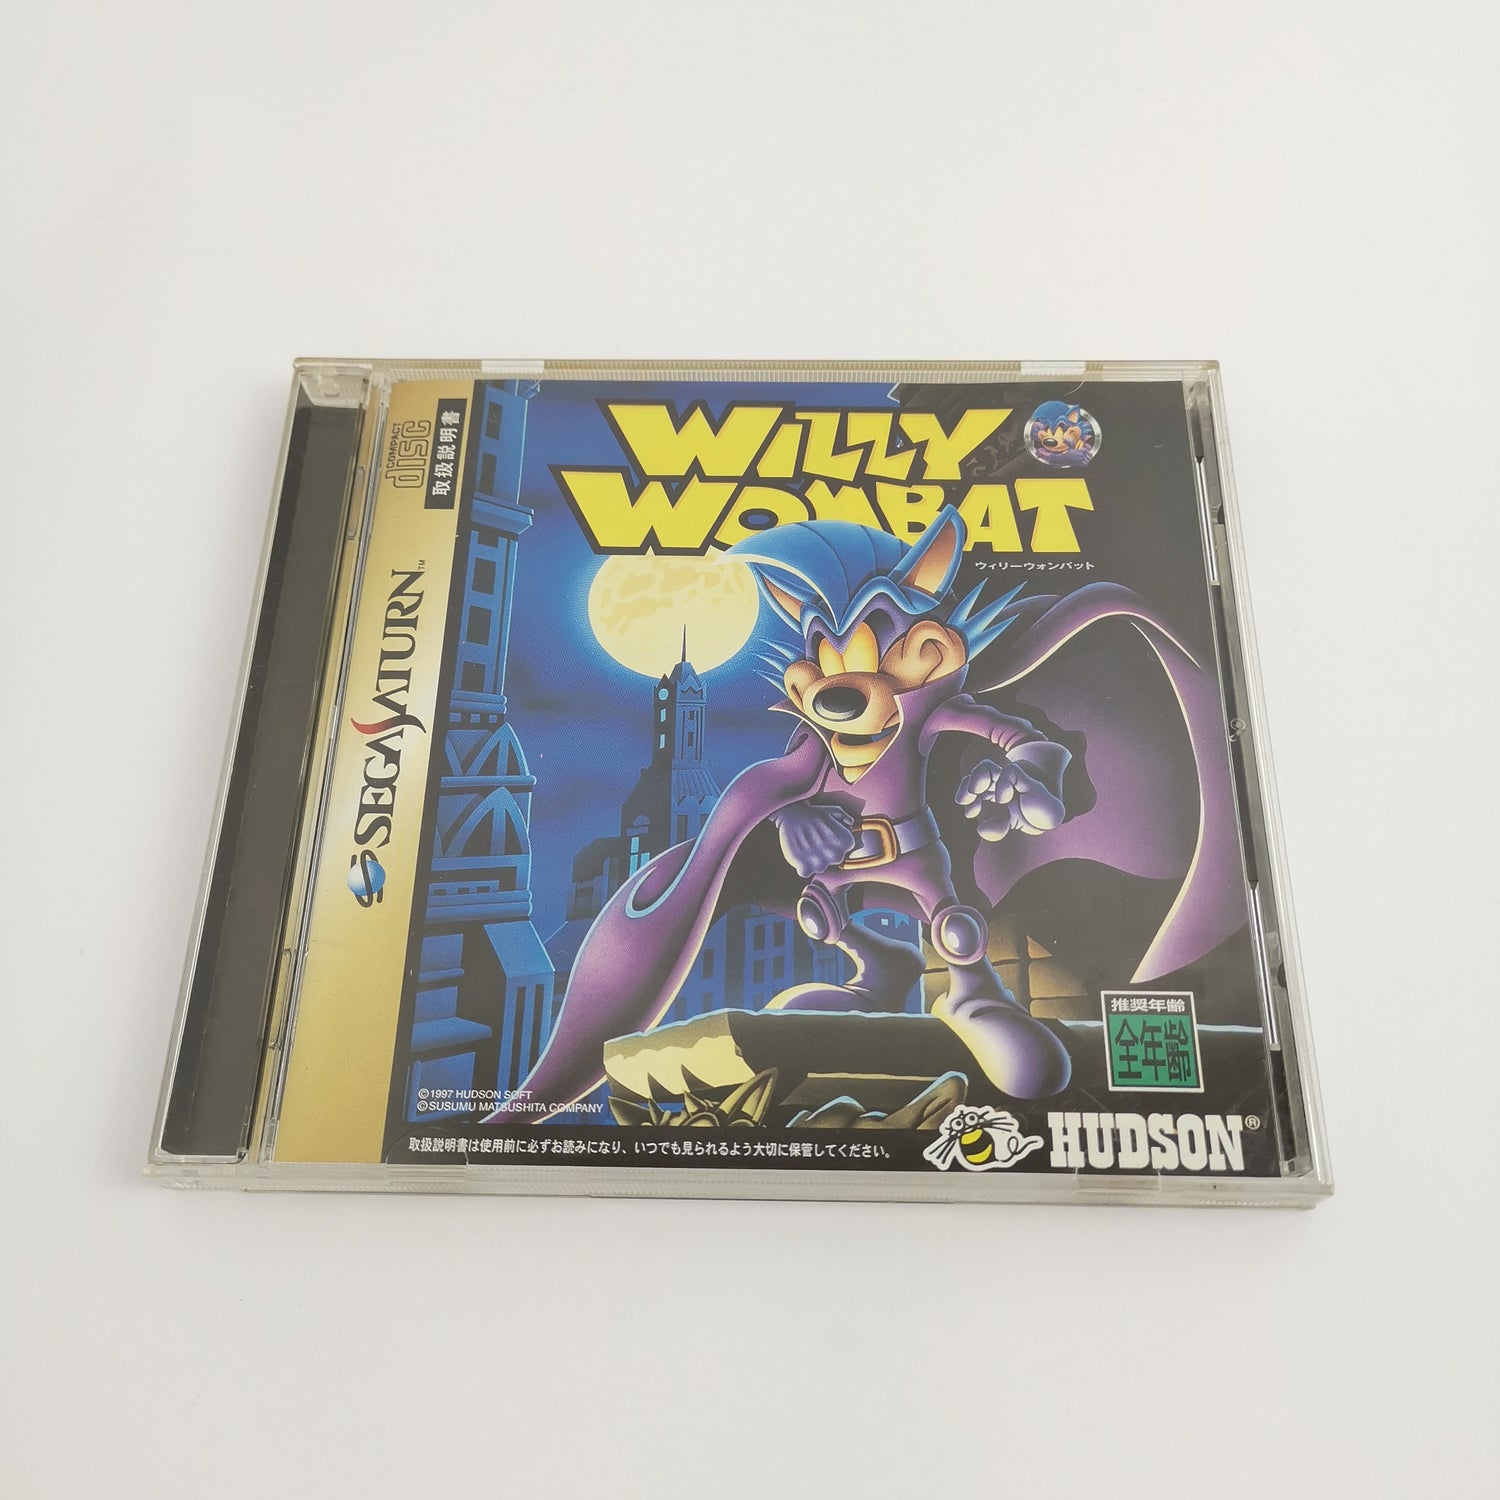 Japanese Sega Saturn game: Willy Wombat | NTSC-J JAPAN - original packaging